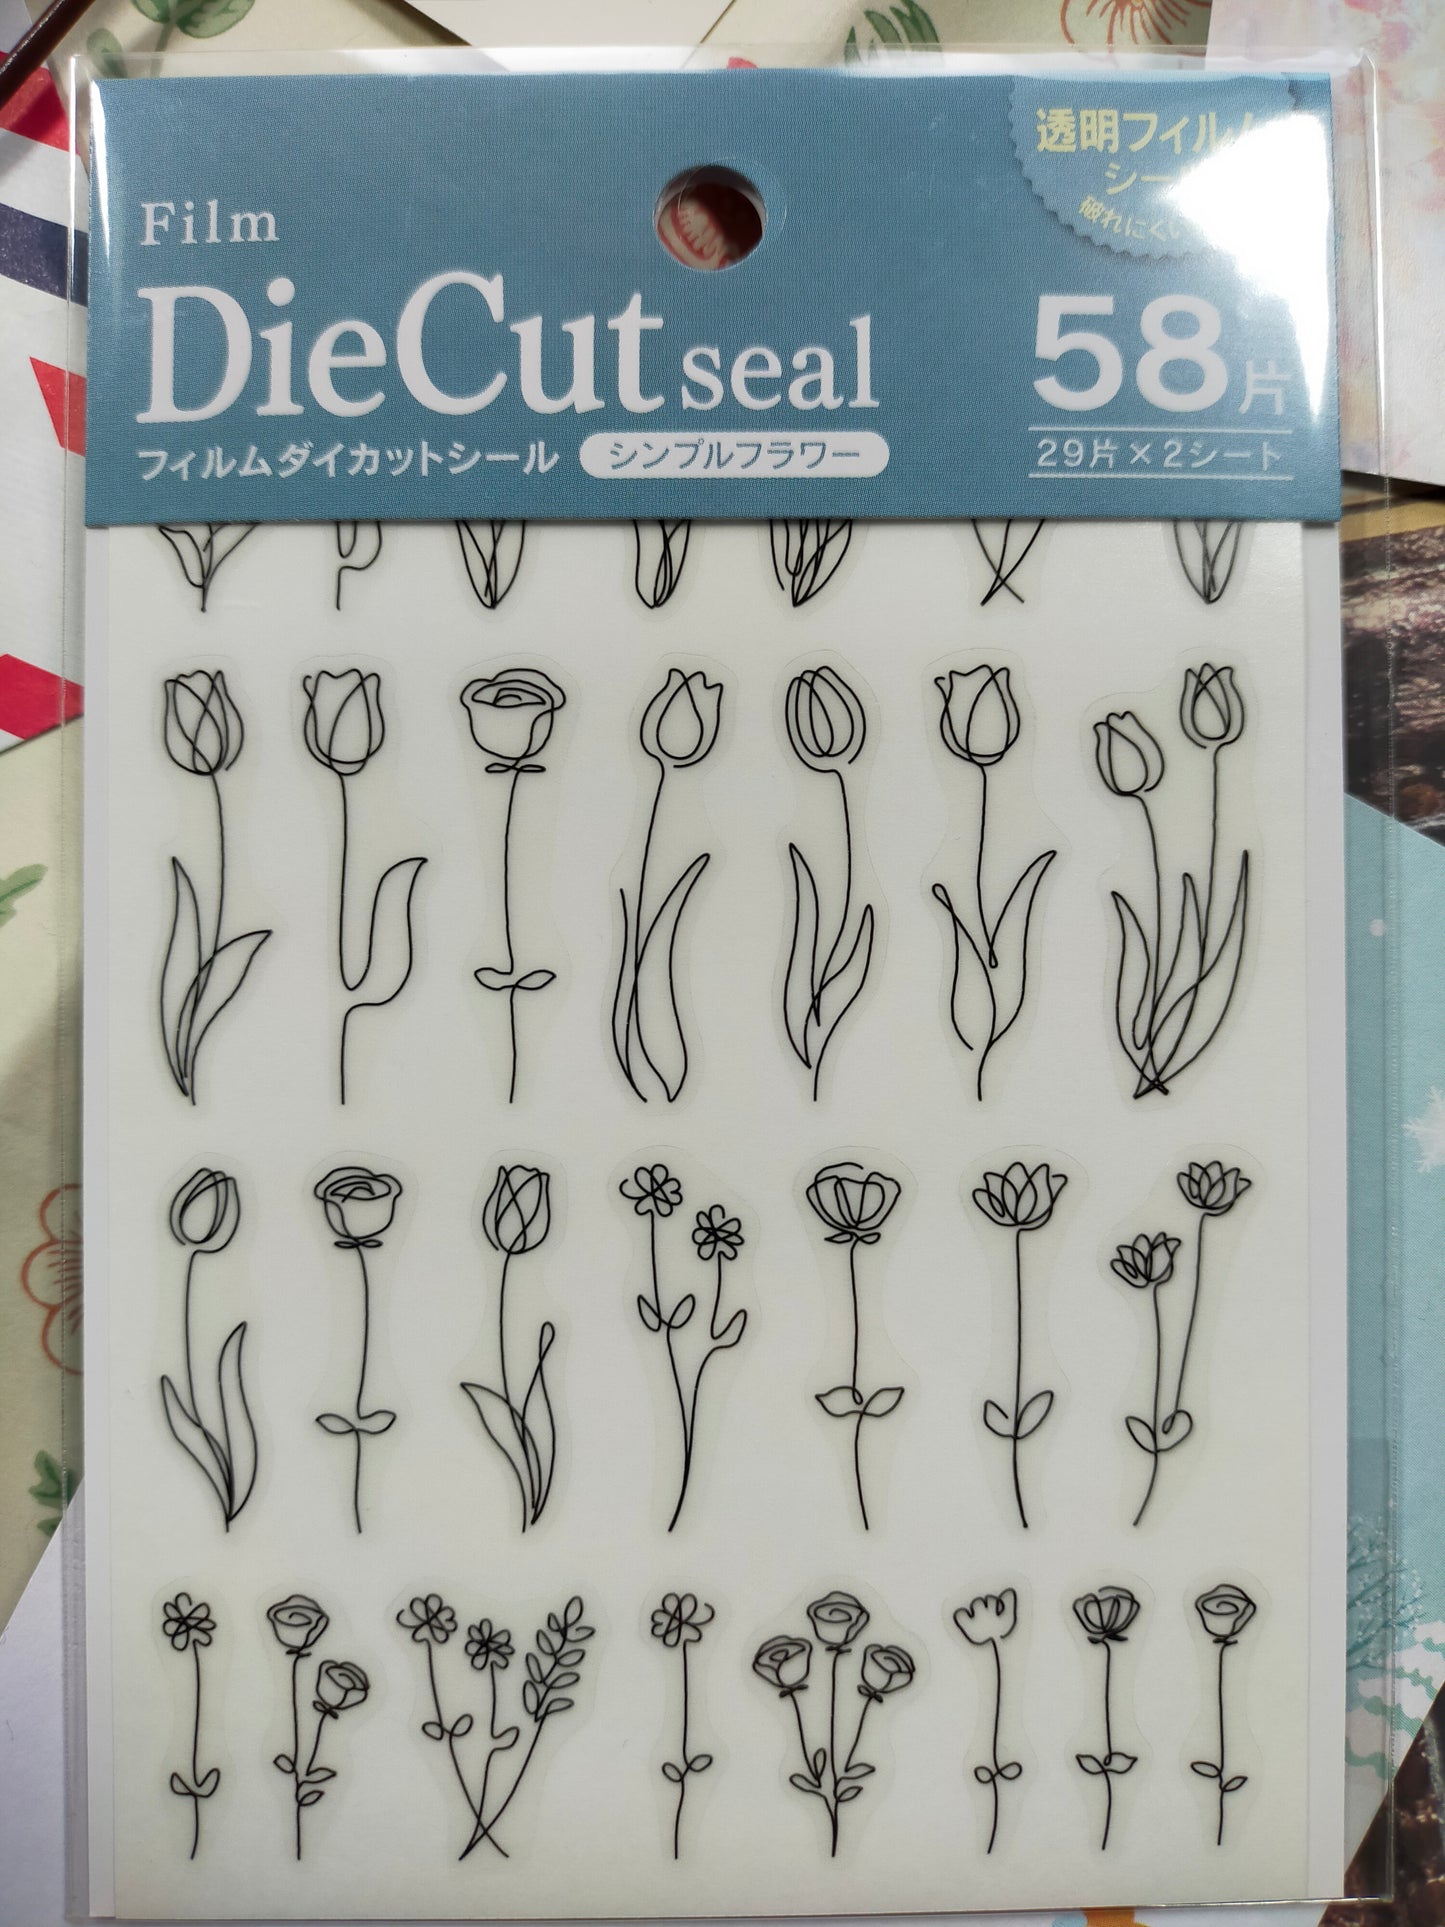 Die cut seal ,Kyowa_ Simple Flower 58 p / Small Flowers 224p